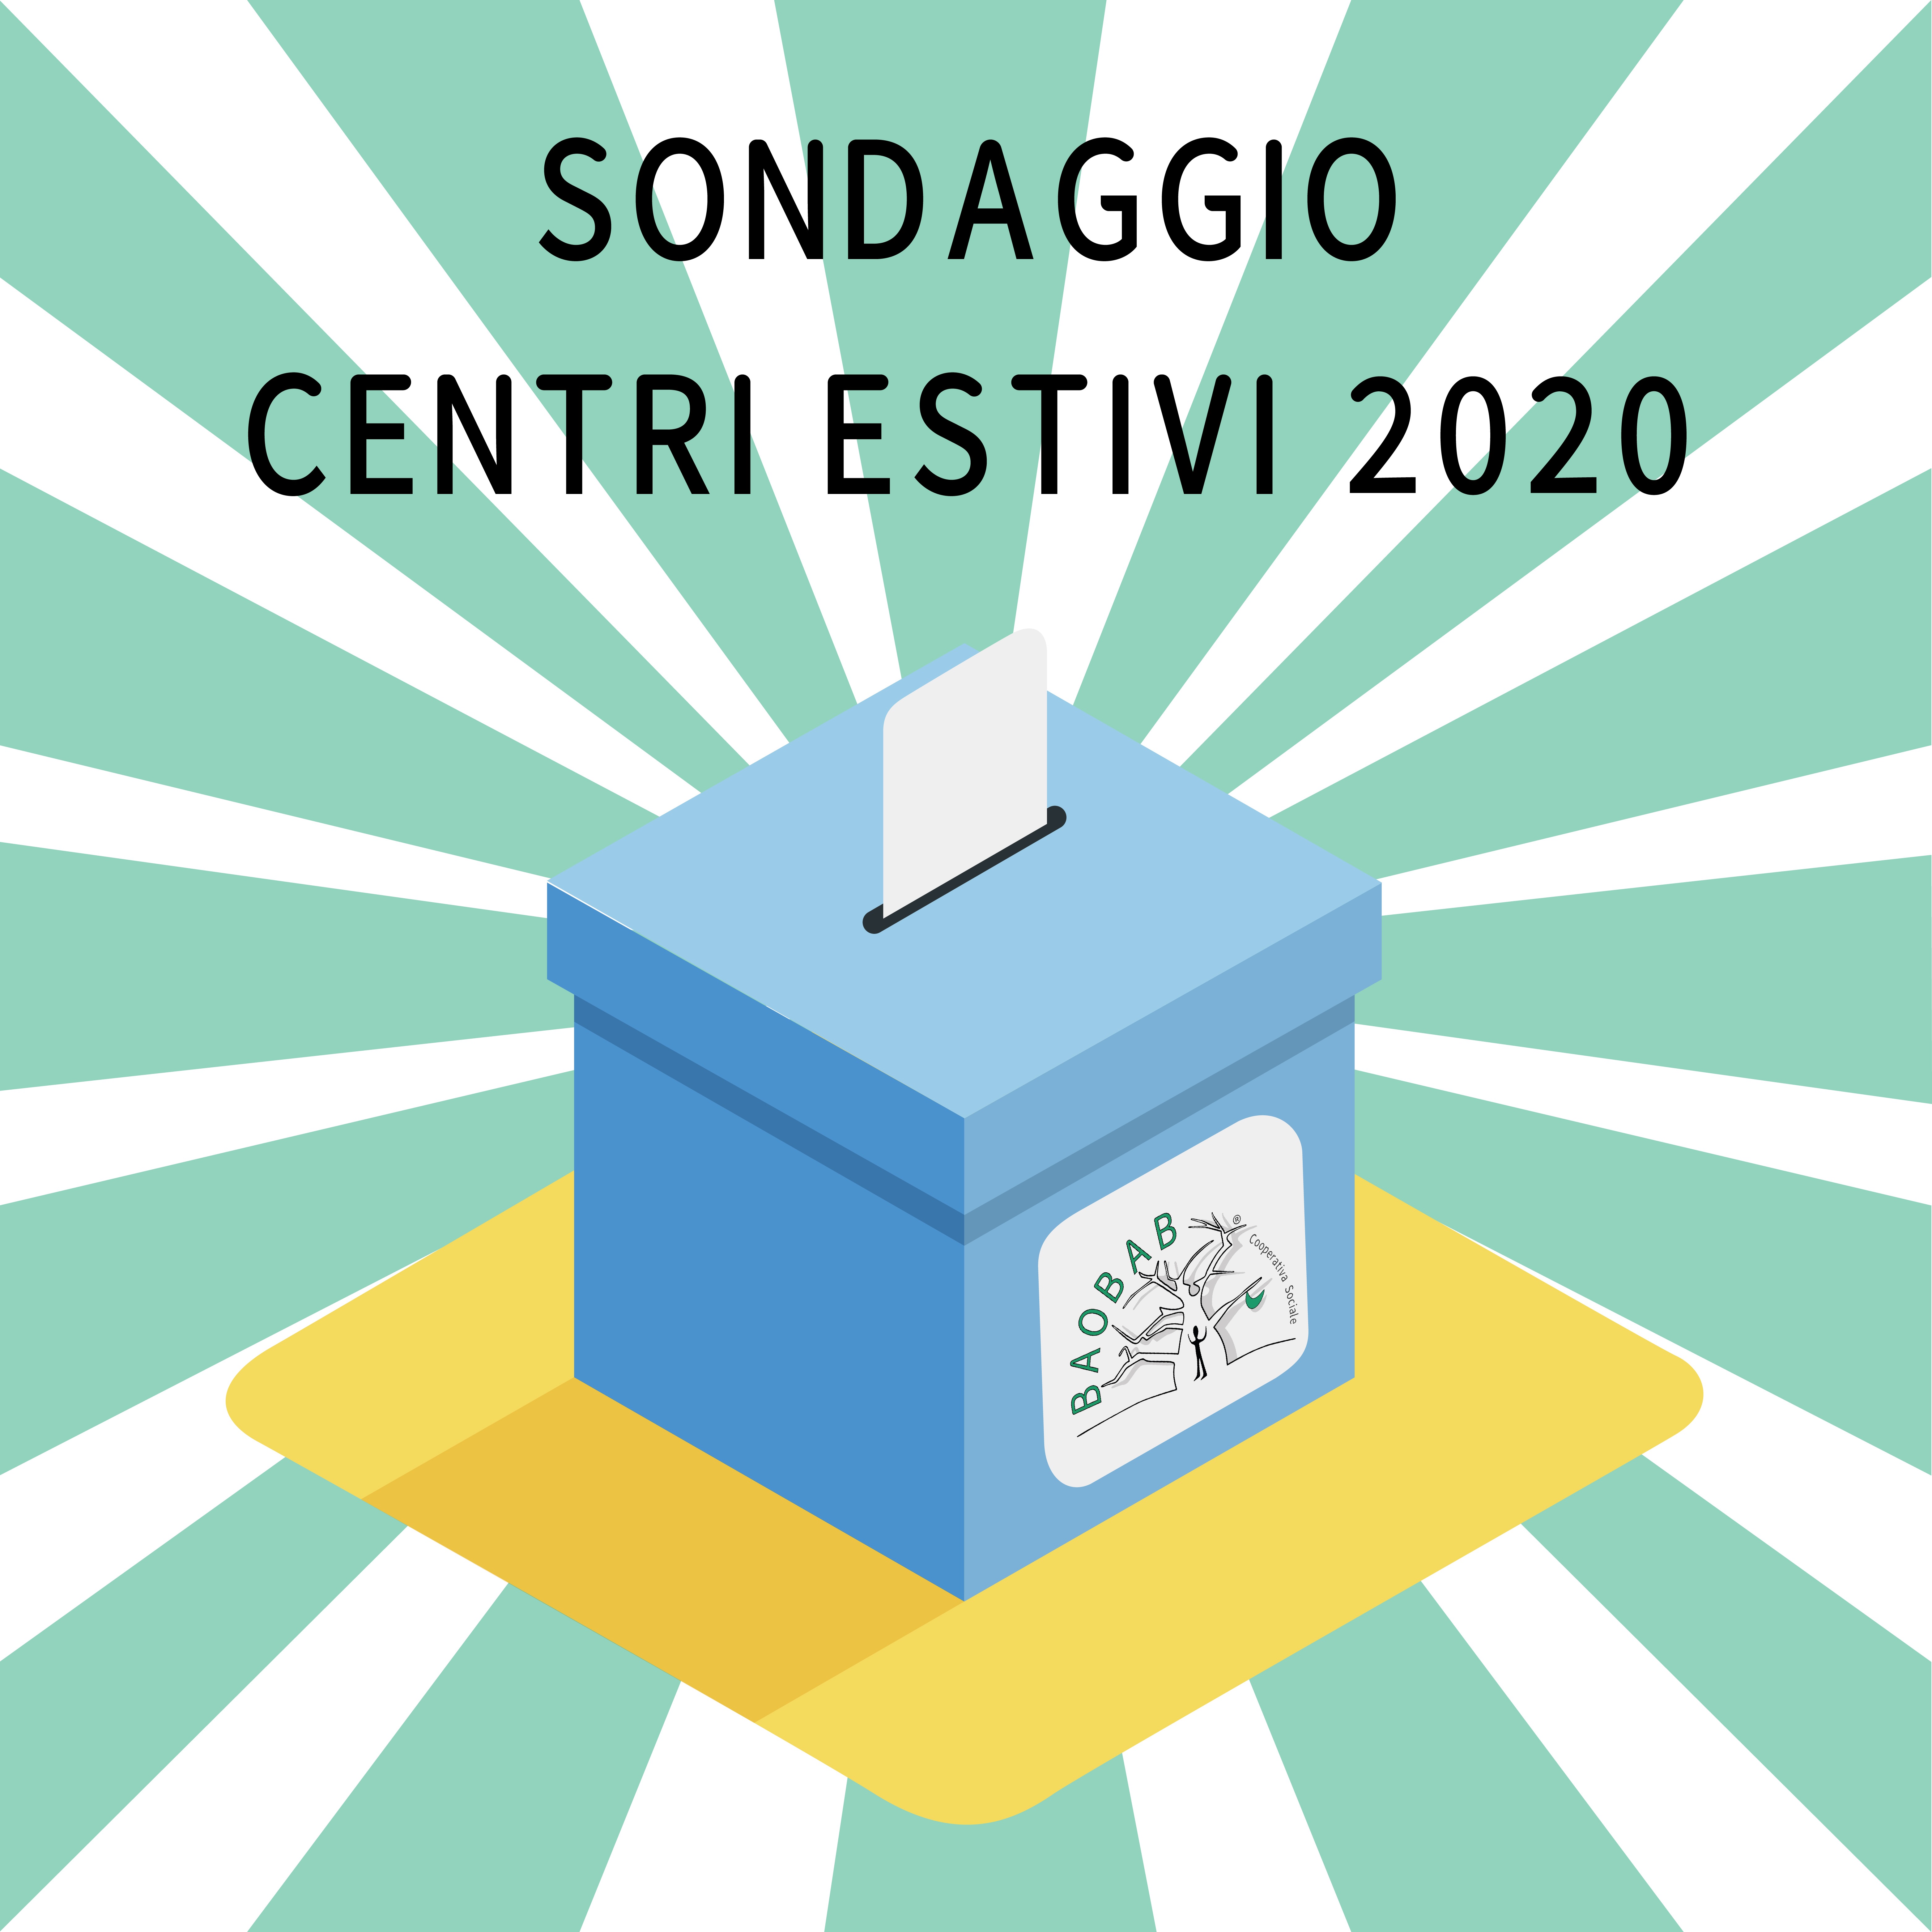 SONDAGGIO CENTRI ESTIVI 2020